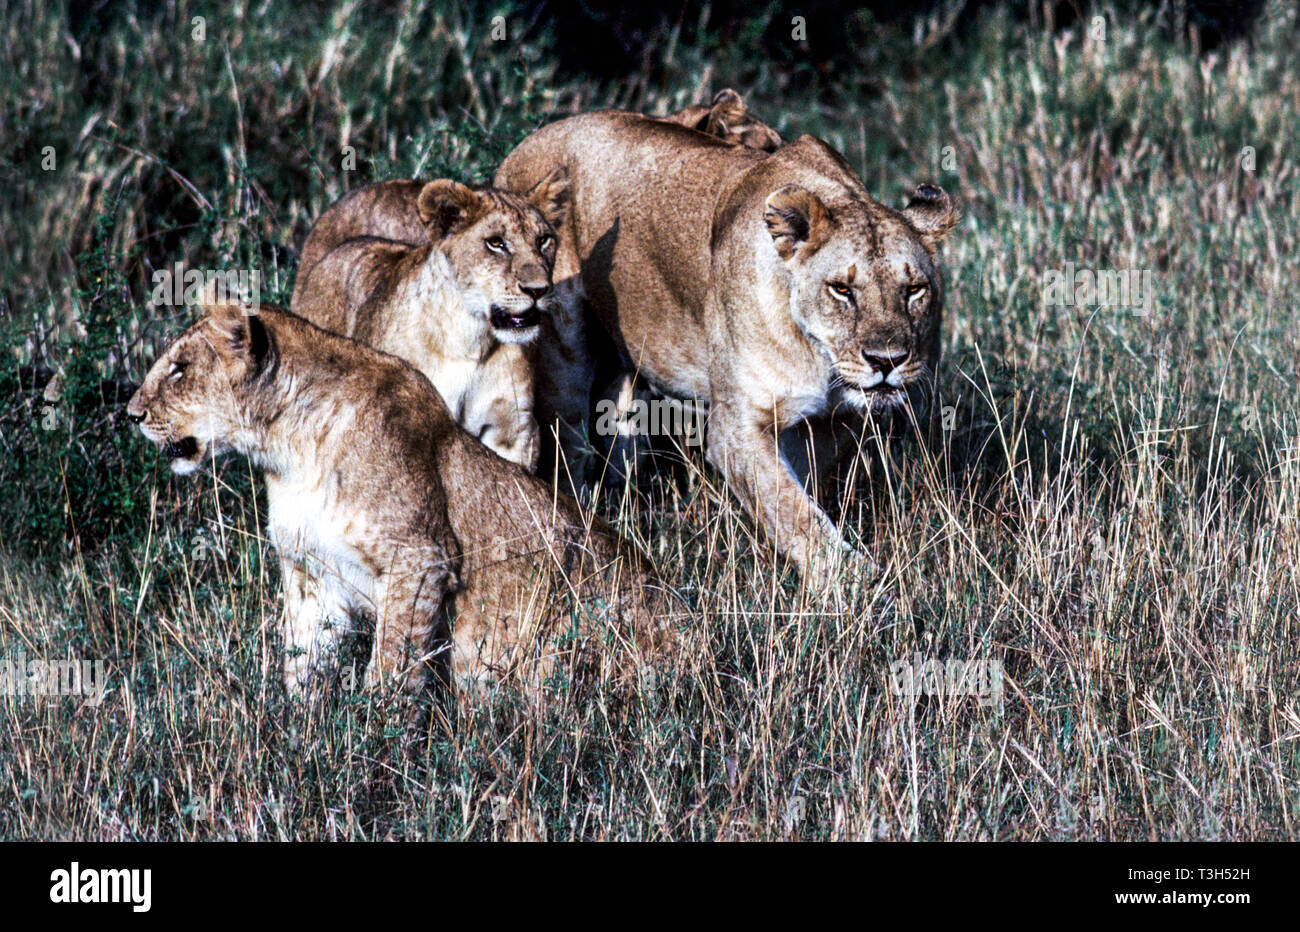 Löwin mit zwei Jungen in der Masai Mara National Park Kenia. Ostafrika. Stockfoto